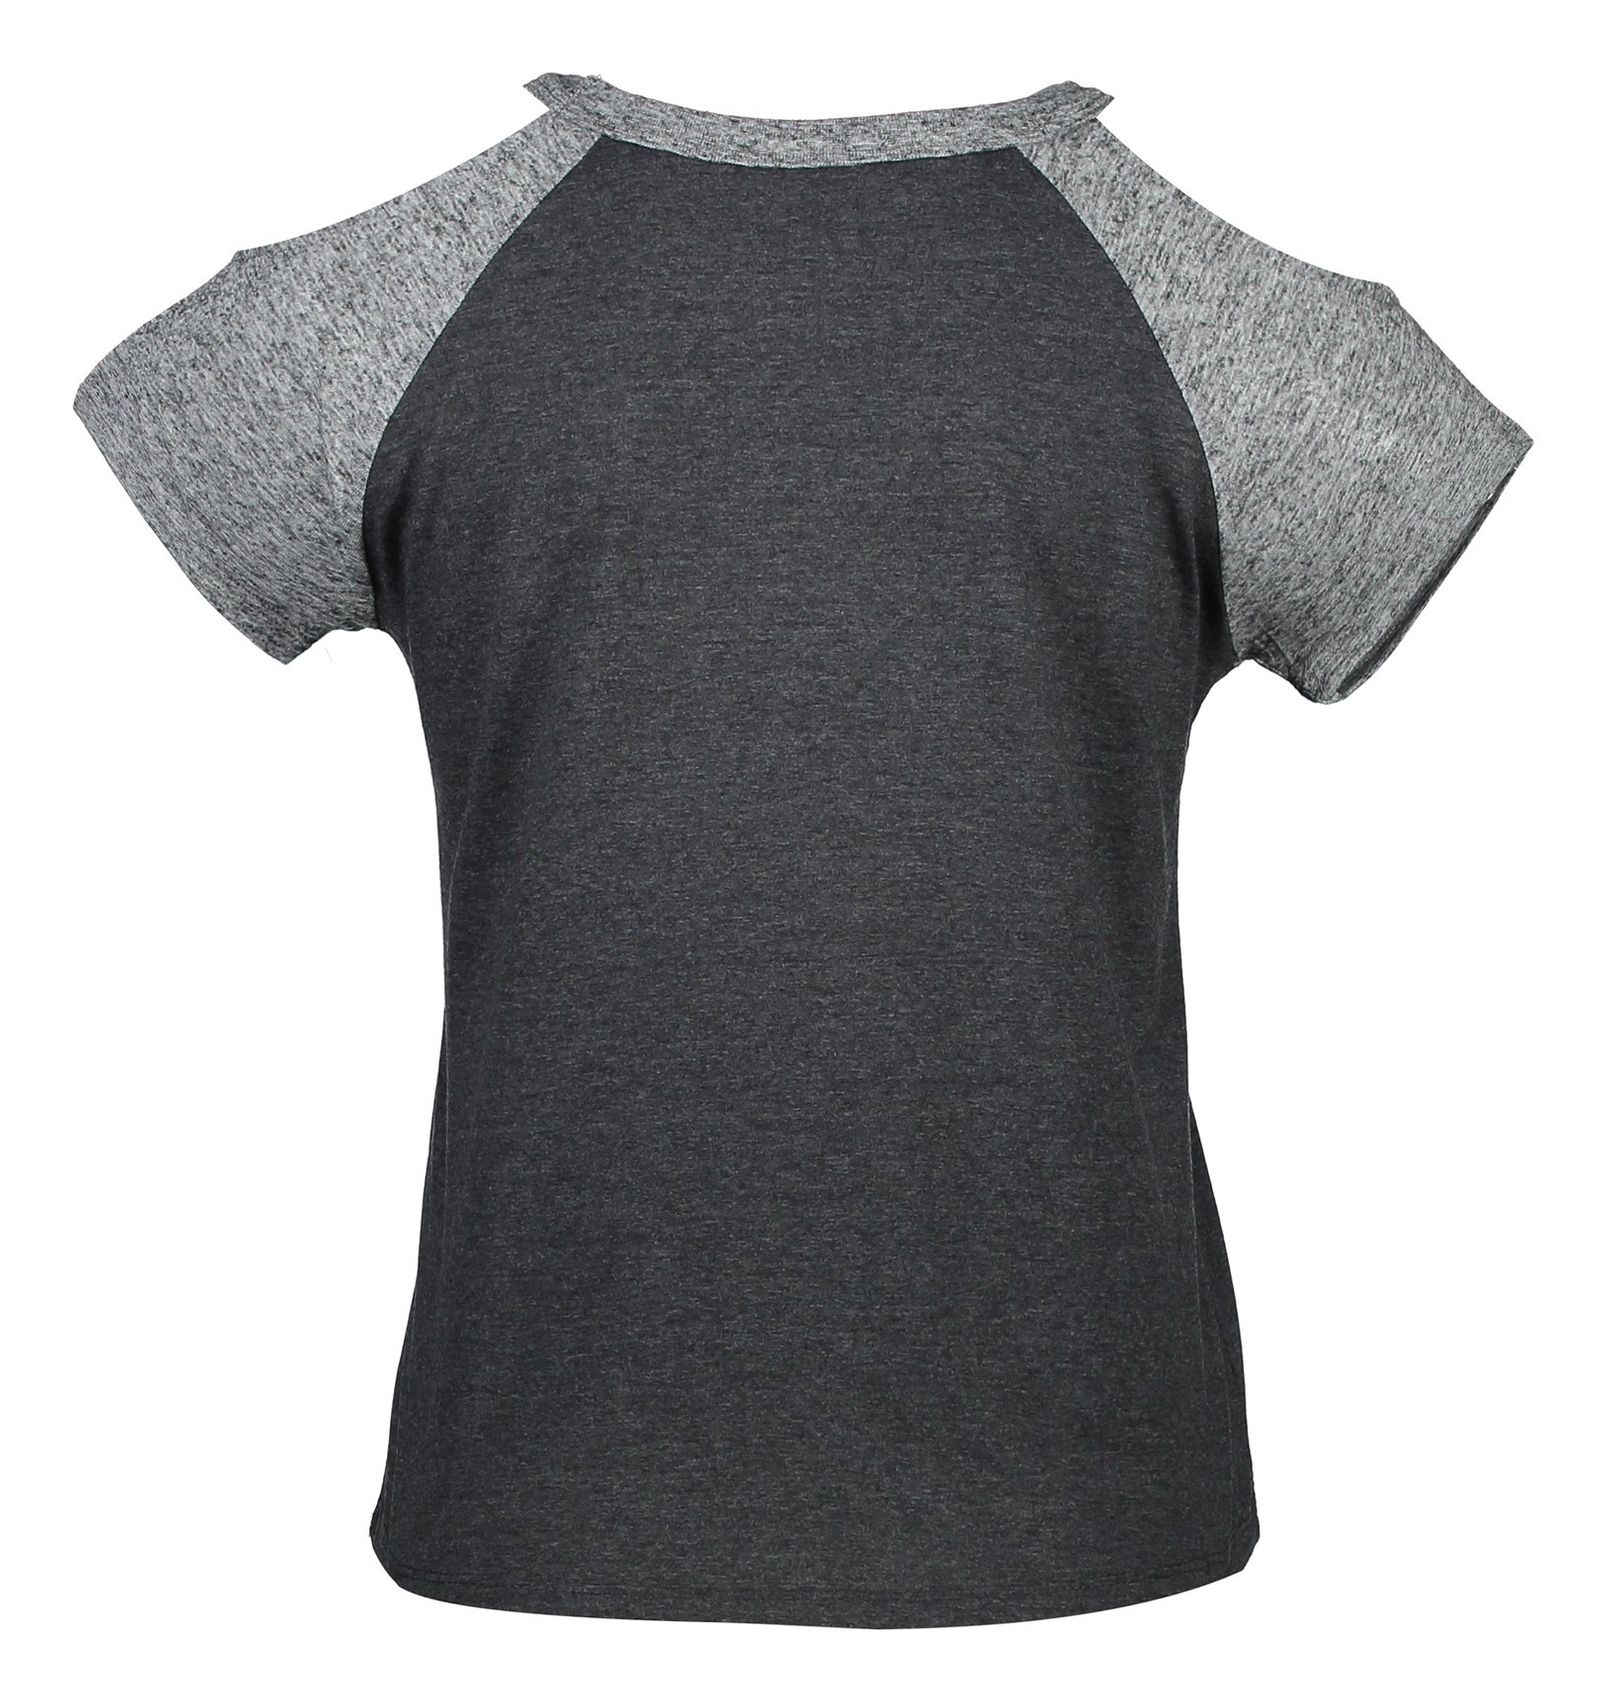 تی شرت یقه گرد زنانه - جنیفر - طوسي زغالي - 3